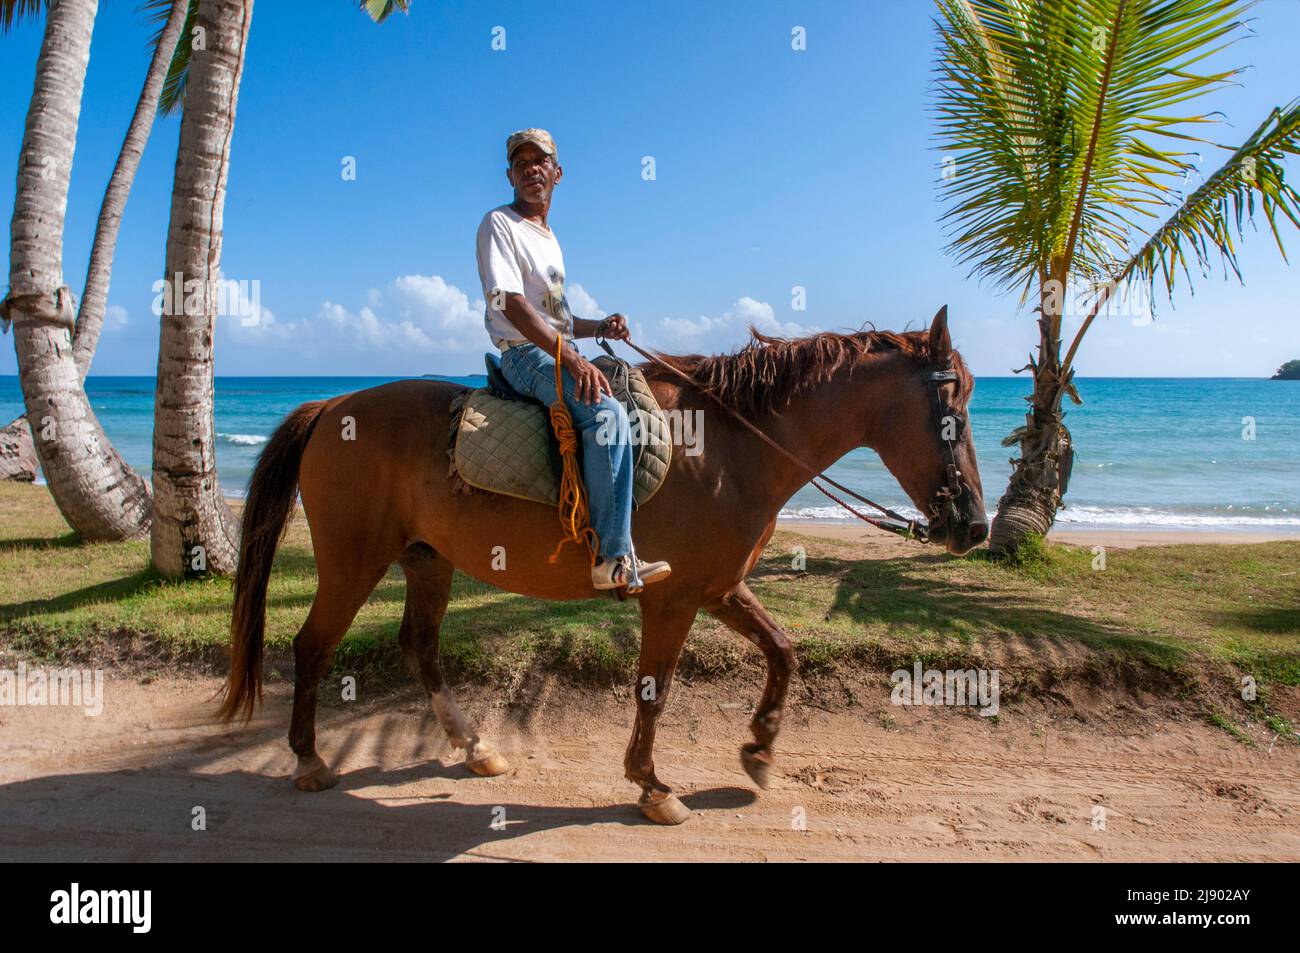 Caballos en la playa de Playa bonita en la península de Samaná en República Dominicana cerca de la ciudad de Las Terrenas. Playa Bonita, como su nombre sugiere Foto de stock